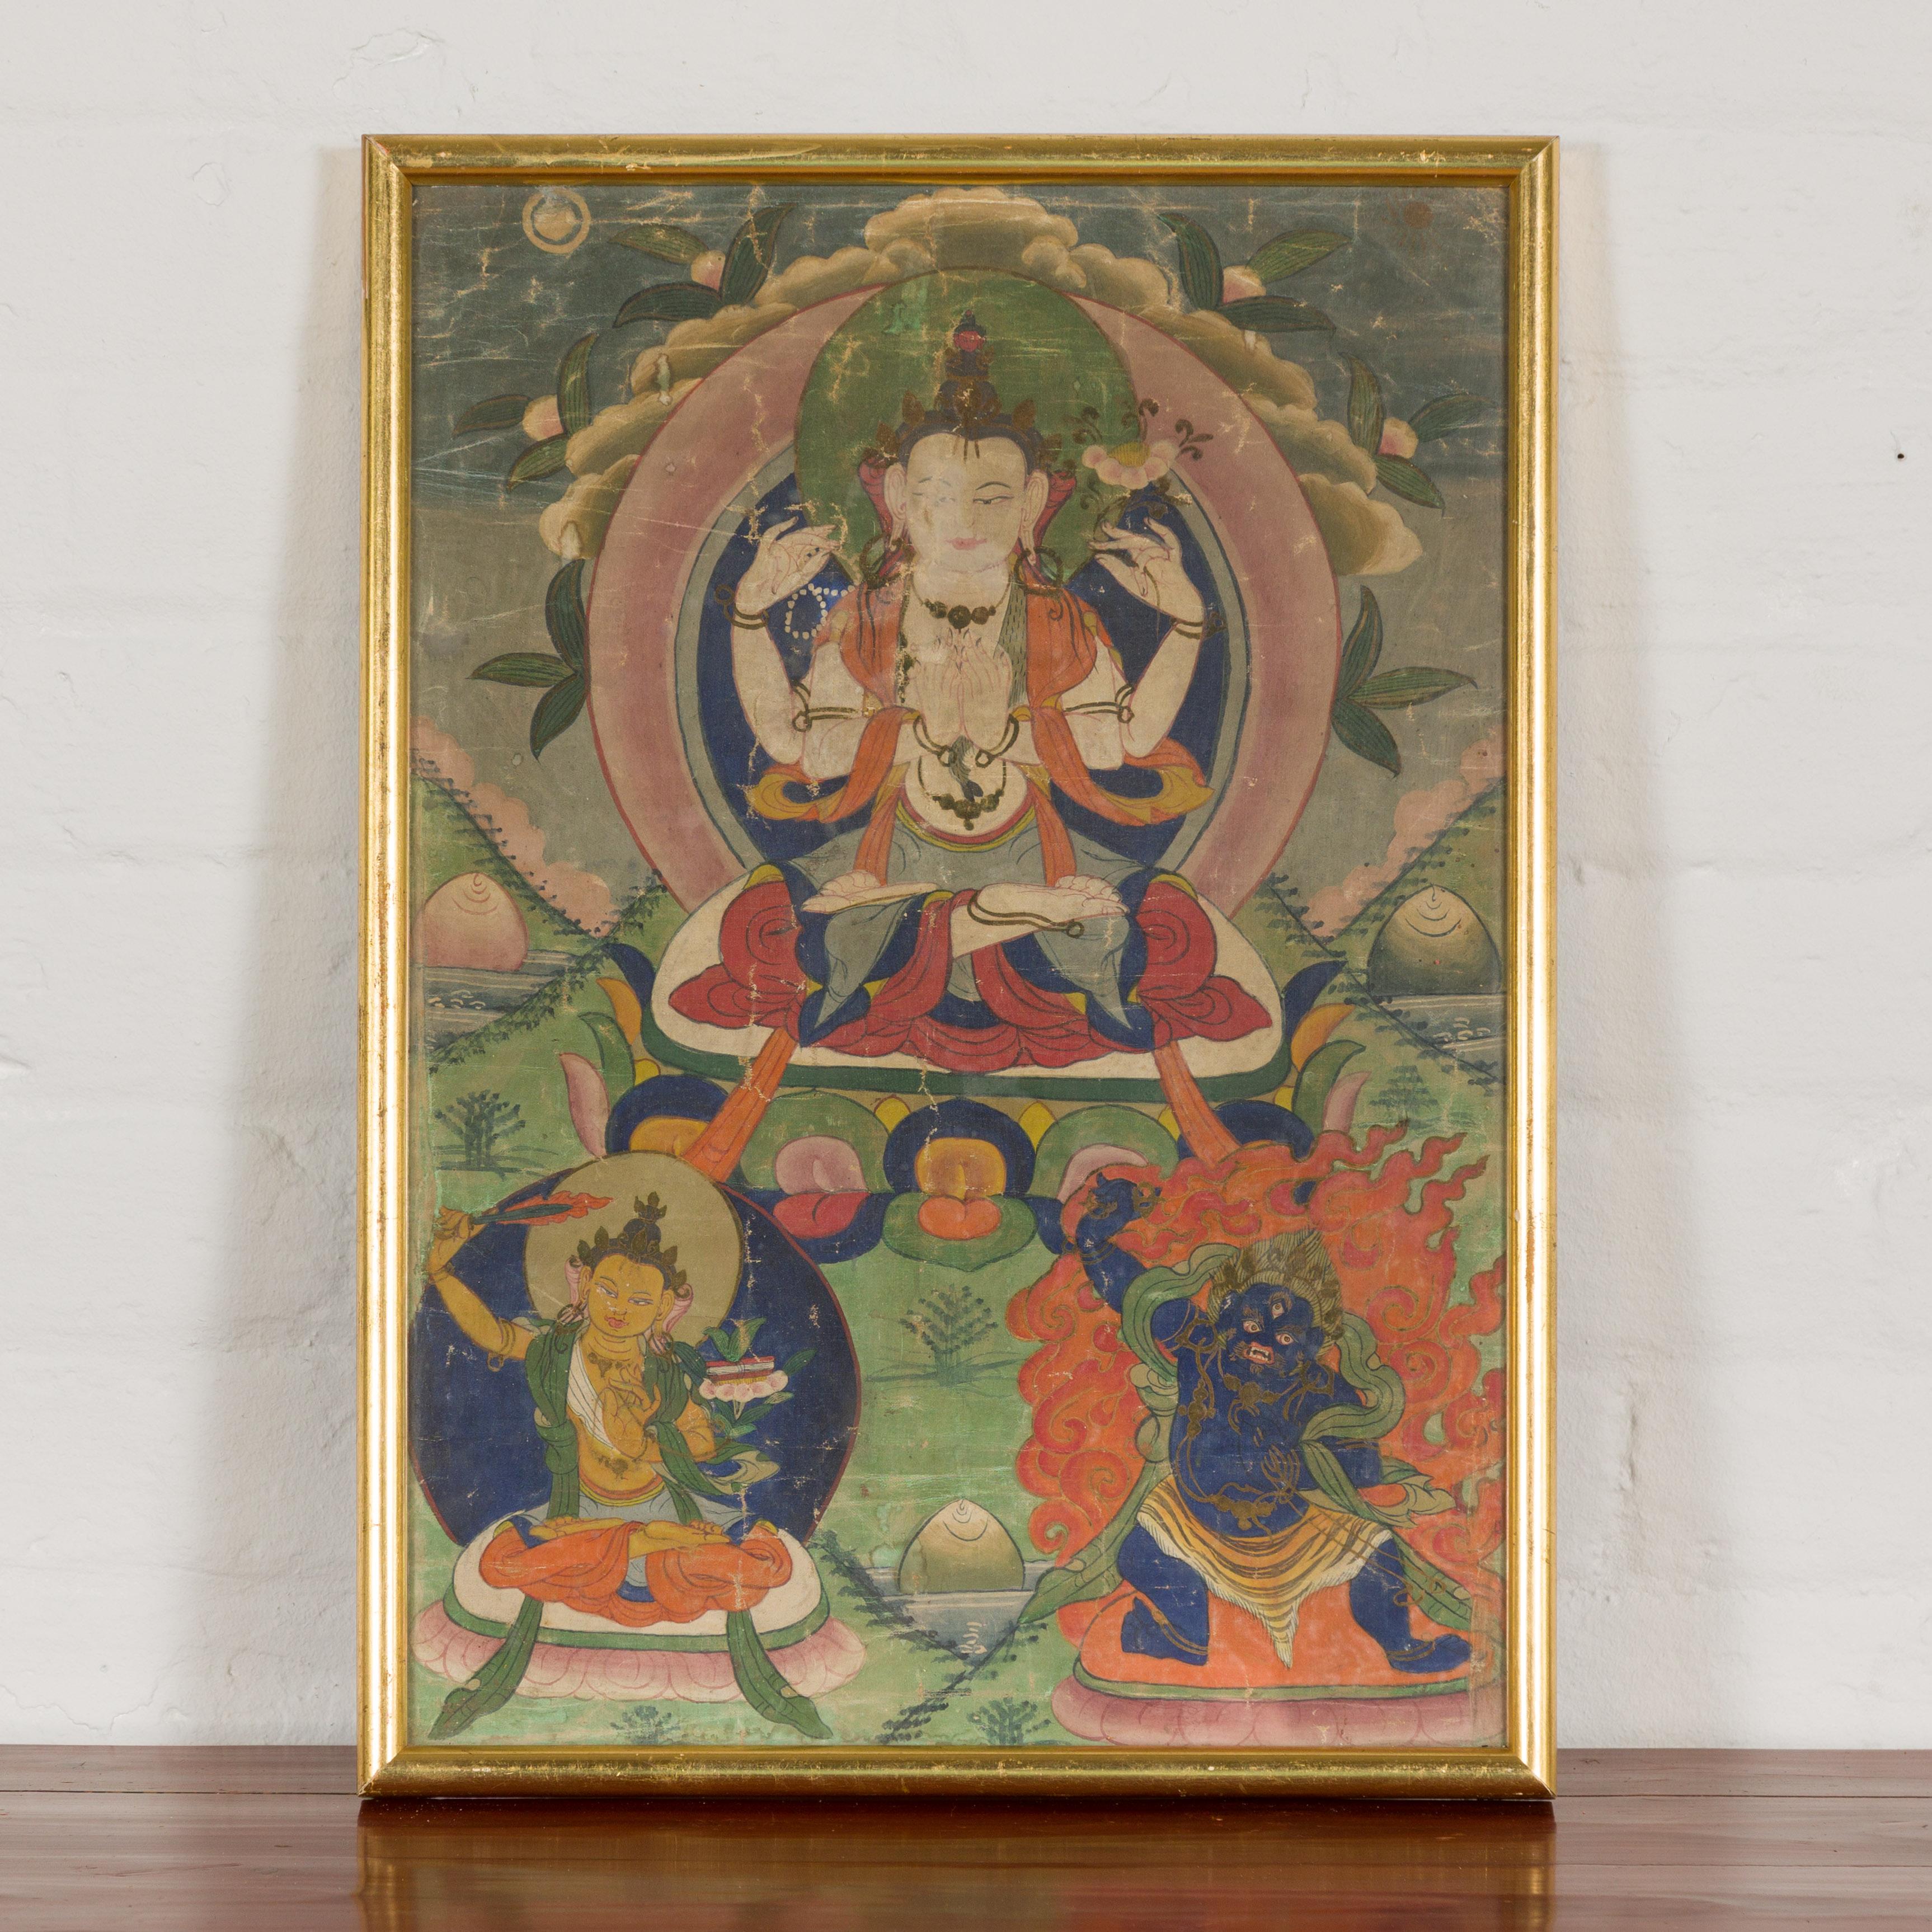 Peinture bouddhiste tibétaine Thangka peinte à la main sur toile, créée pour la vénération des trois grands bodhisattvas. Embrassez la riche tradition du bouddhisme tibétain avec cette vibrante peinture Thangka, une rayonnante œuvre d'art